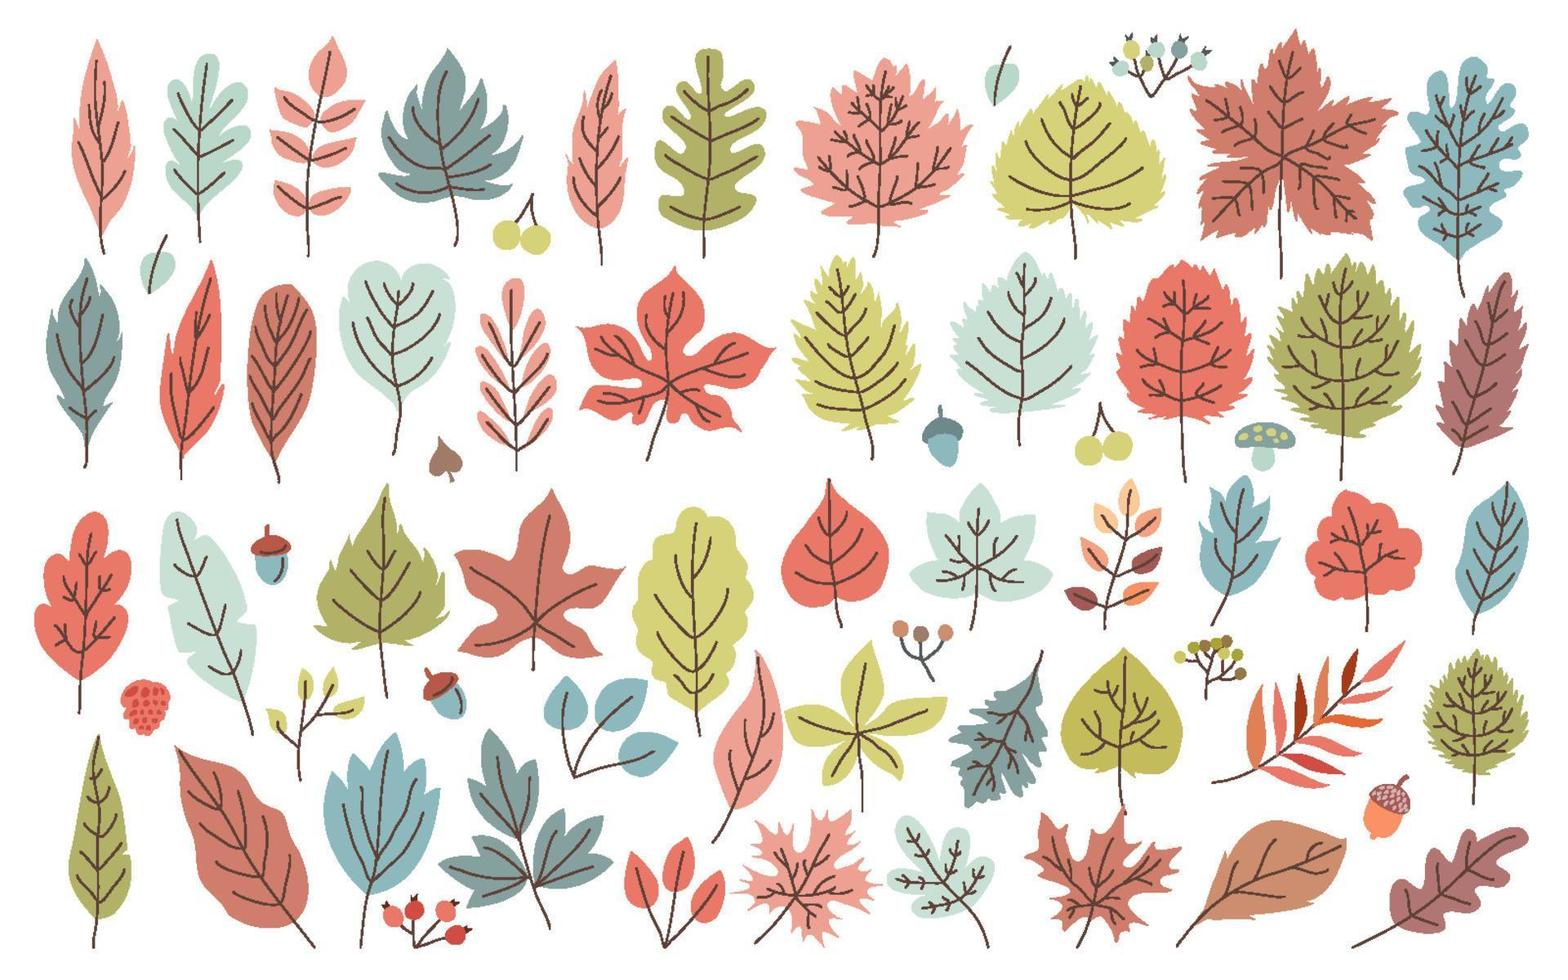 conjunto dibujado a mano de hojas de otoño elementos iconos objetos, ilustración vectorial con coloridos robles, nogales, arces, álamos, abedules, hayas y dogwood leavesa vector